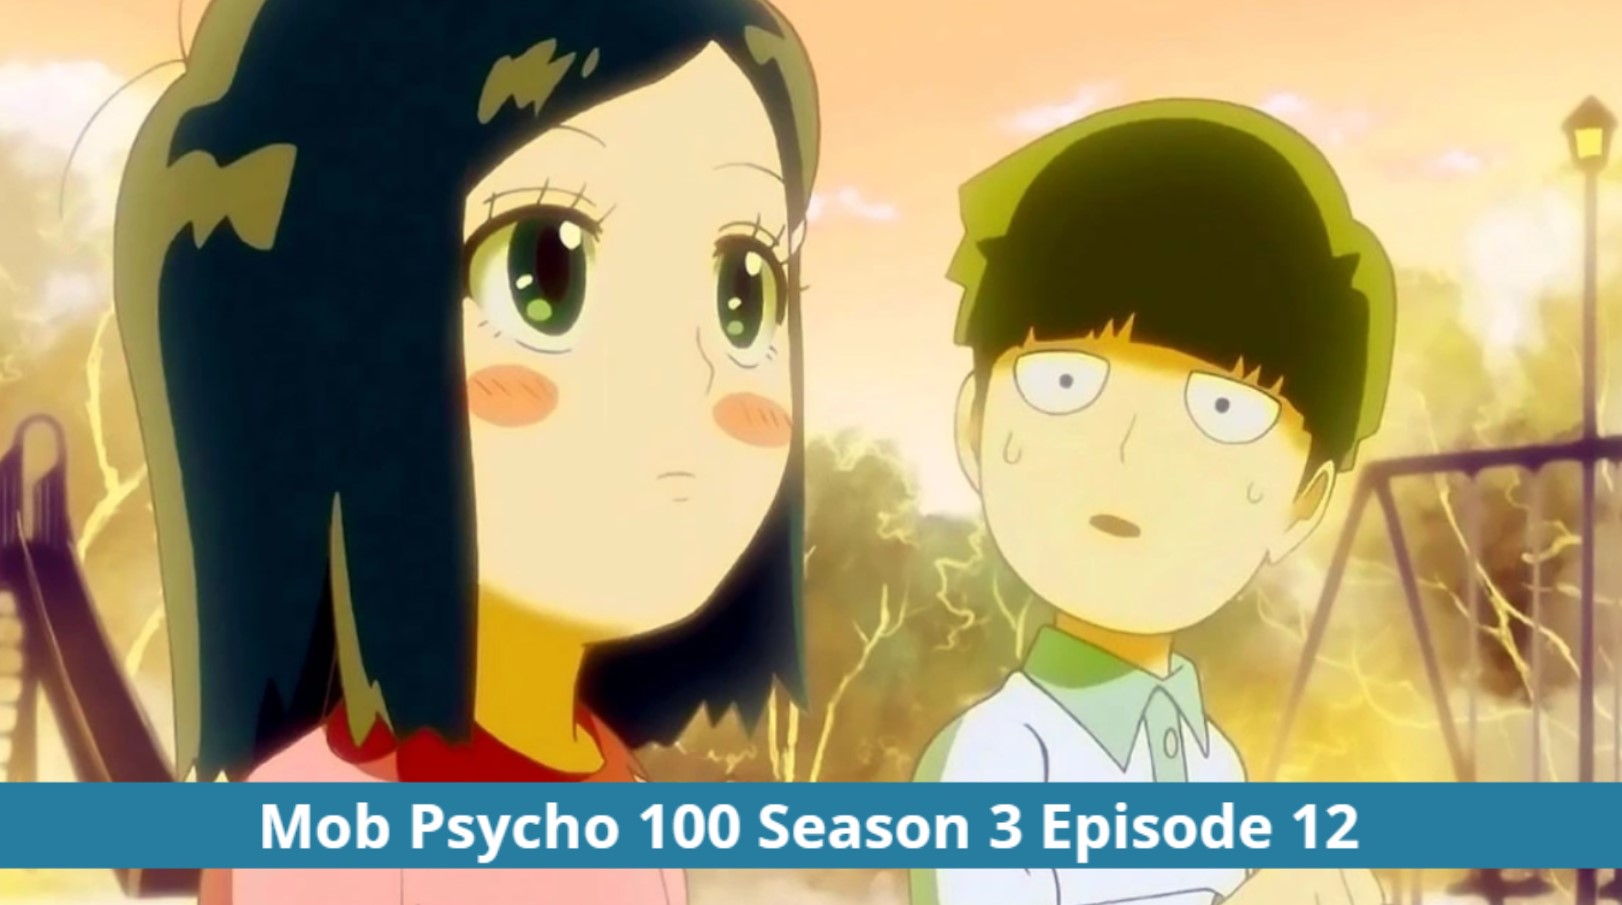 Mob Psycho 100 Season 3, Episode 12 Release Date 